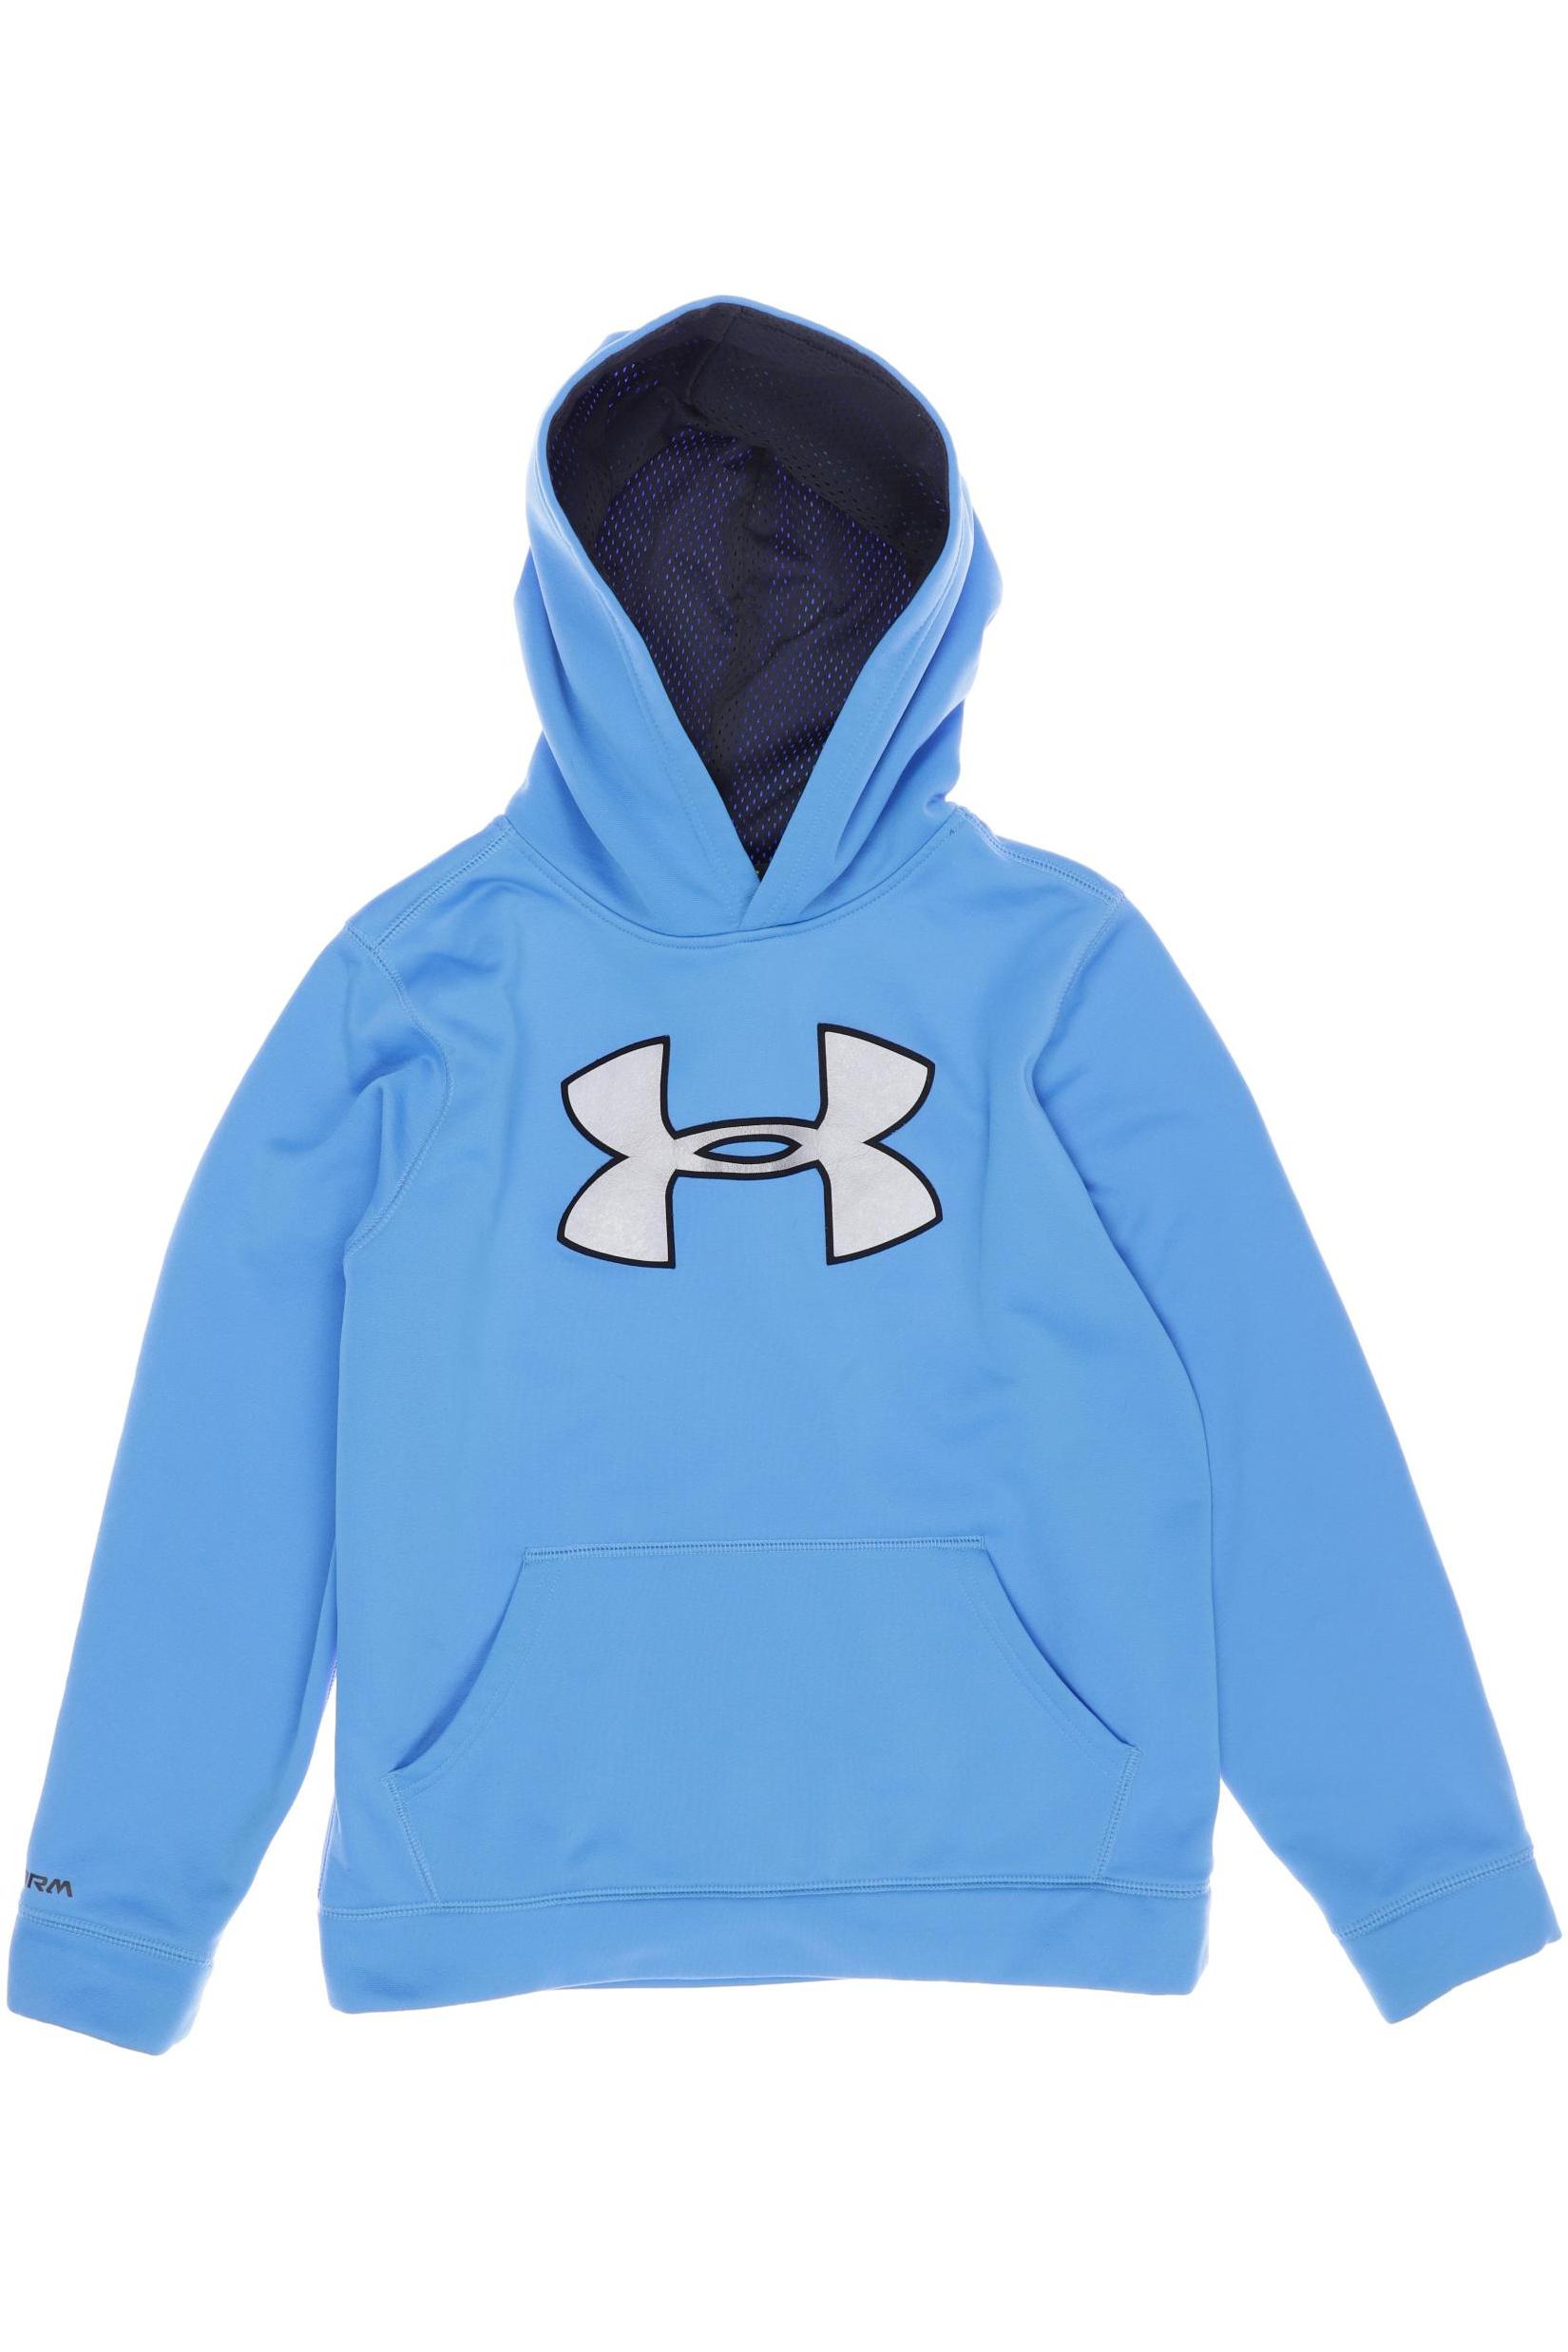 UNDER ARMOUR Jungen Hoodies & Sweater, blau von Under Armour